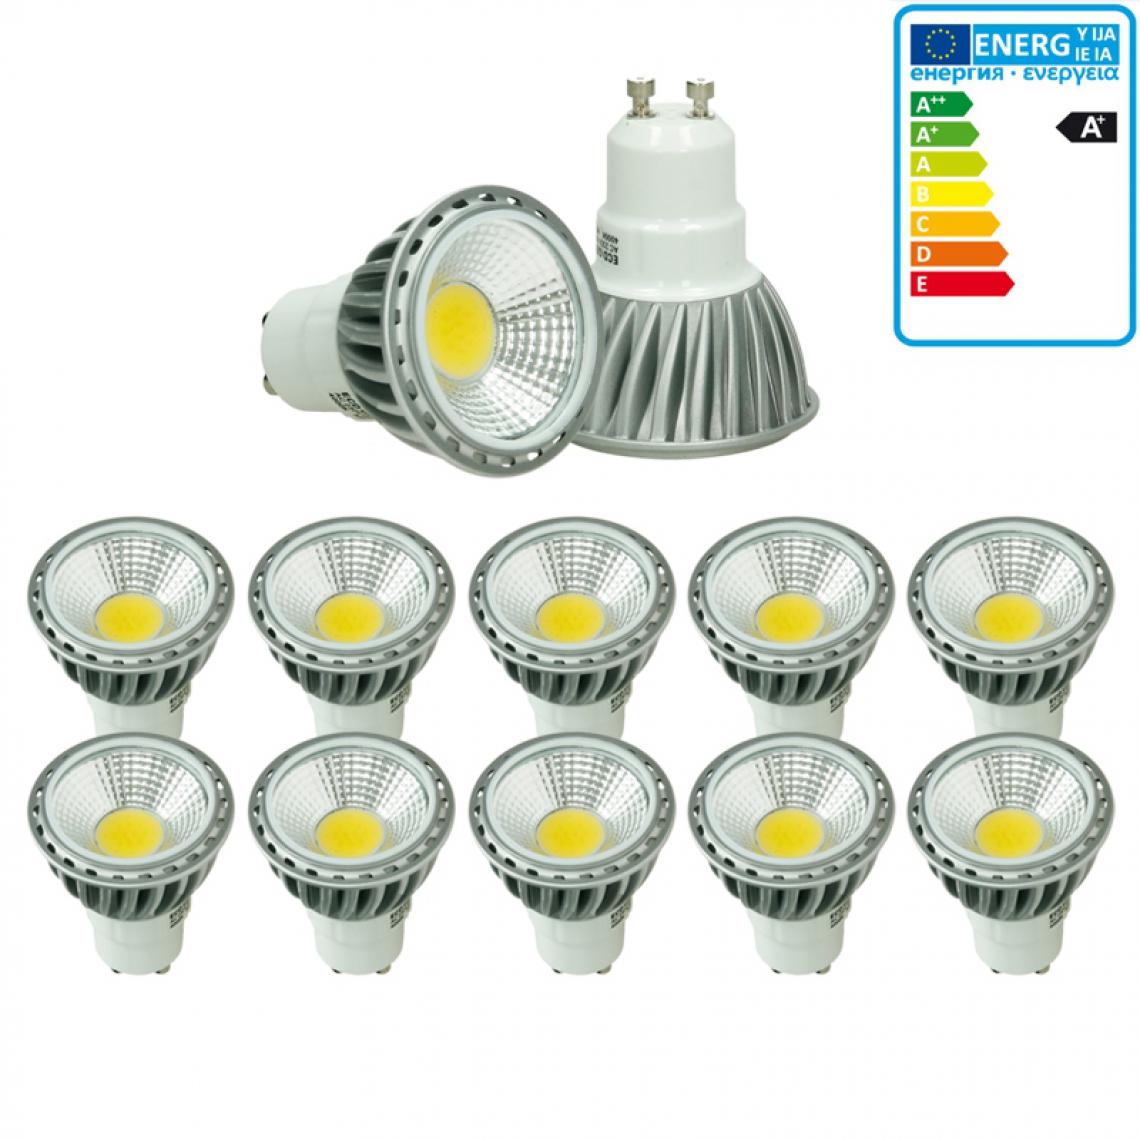 Ecd Germany - ECD Germany 10 x Spot LED 6W GU10 - Spot halogène 30W - 220-240V - Ampoules spot - LED Plafonnier 386 Lumens - Angle de faisceau 60 °- Blanc chaud - 2800K - Ampoules LED